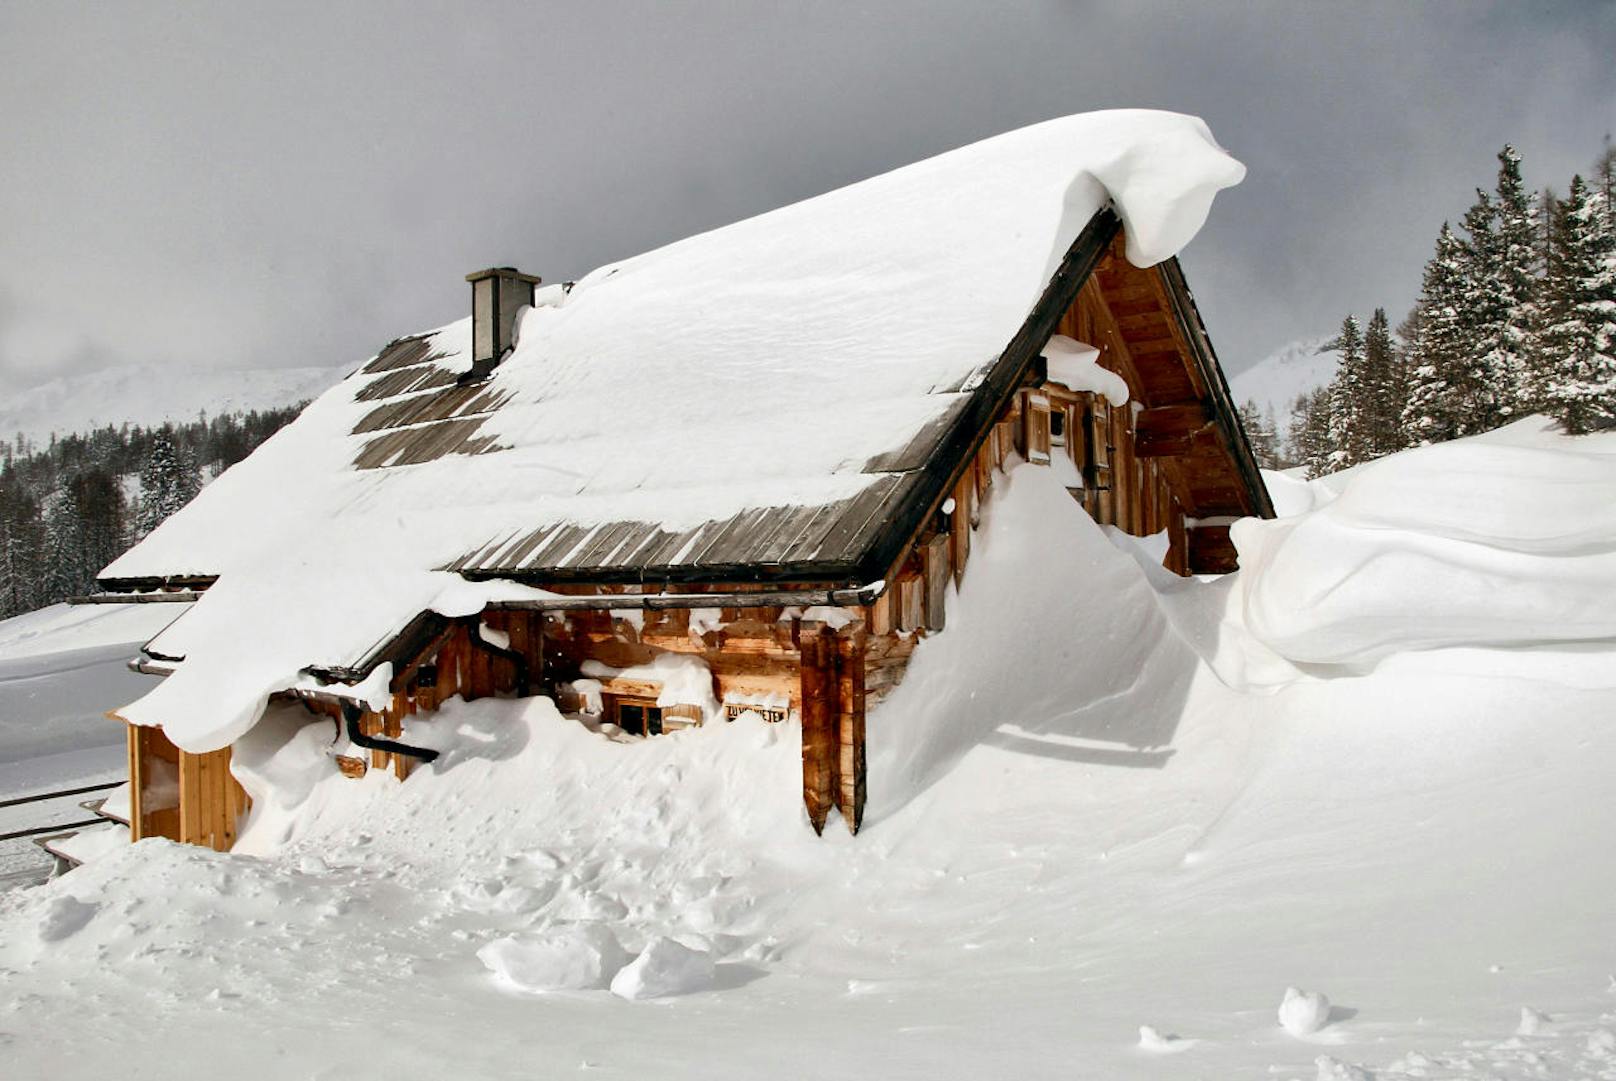 Dächer (auch von Fahrzeugen) sollten wenn möglich vom Schnee befreit werden, damit sich plötzlich lösende Schnee- und Eisplatten nicht zur Gefahr werden.